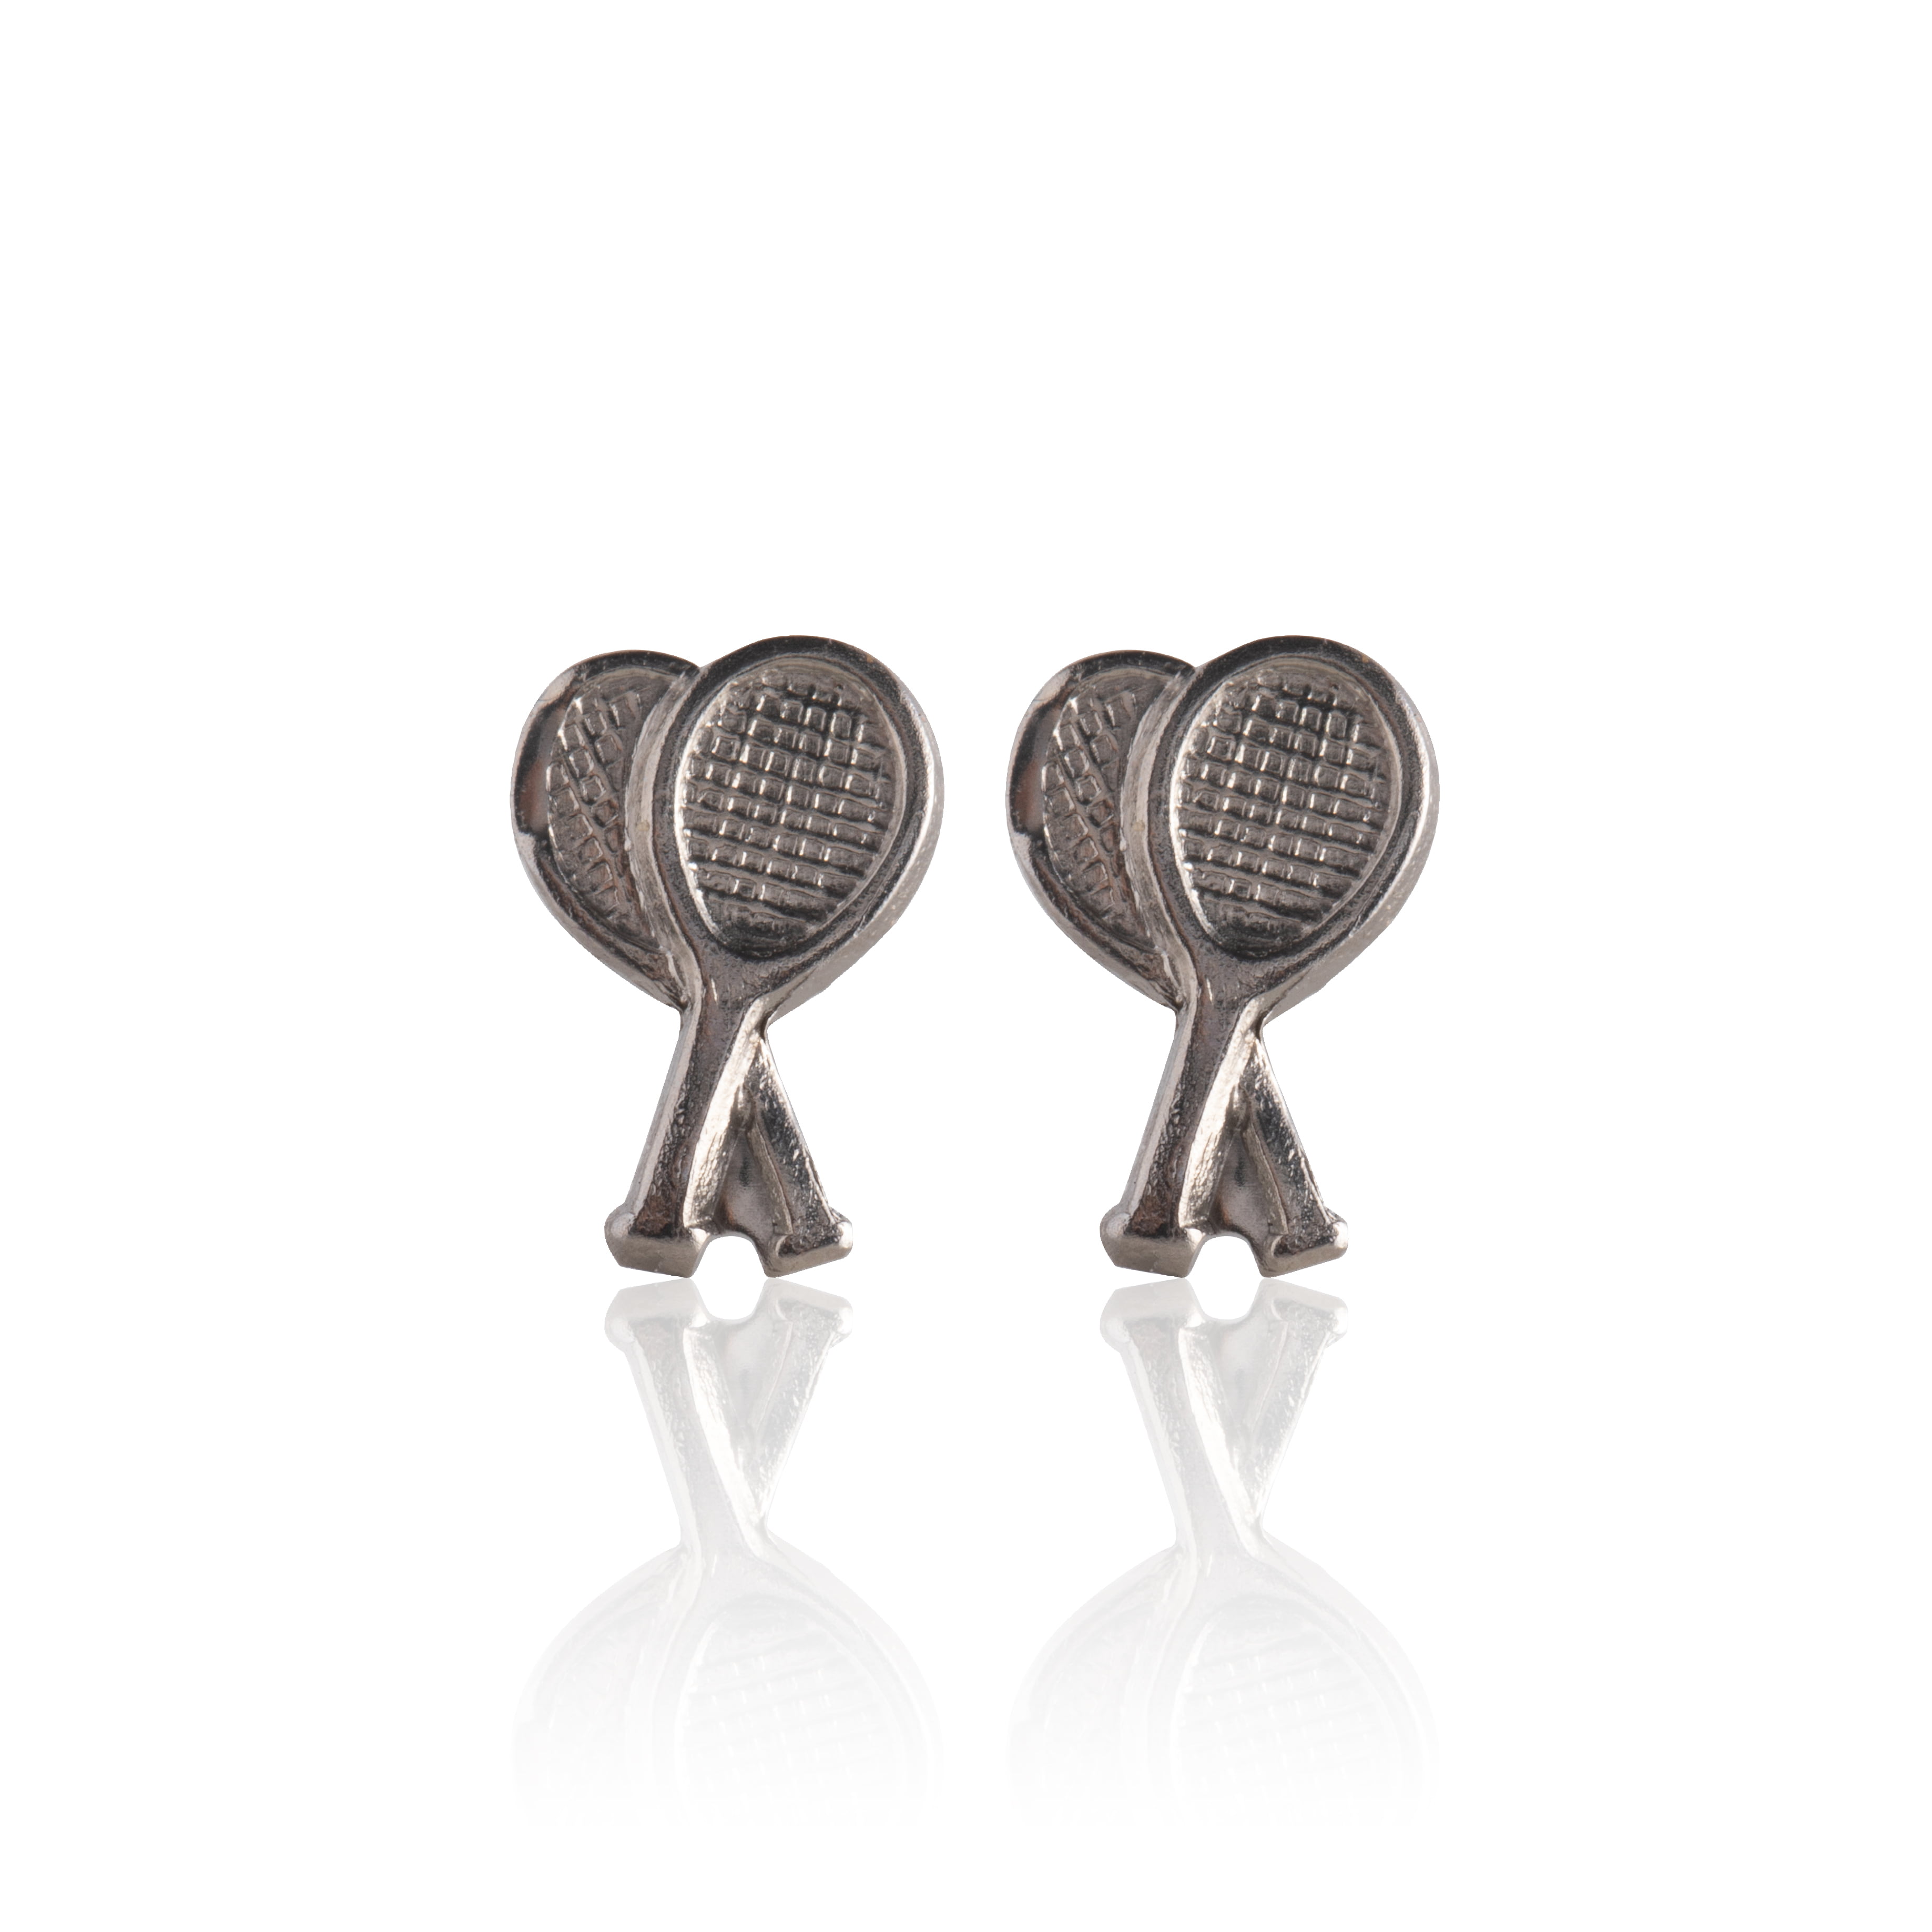 Tennis Earring Sports Enamel Earring Gift for Her Rhinestone Earring Tennis Racket Earring